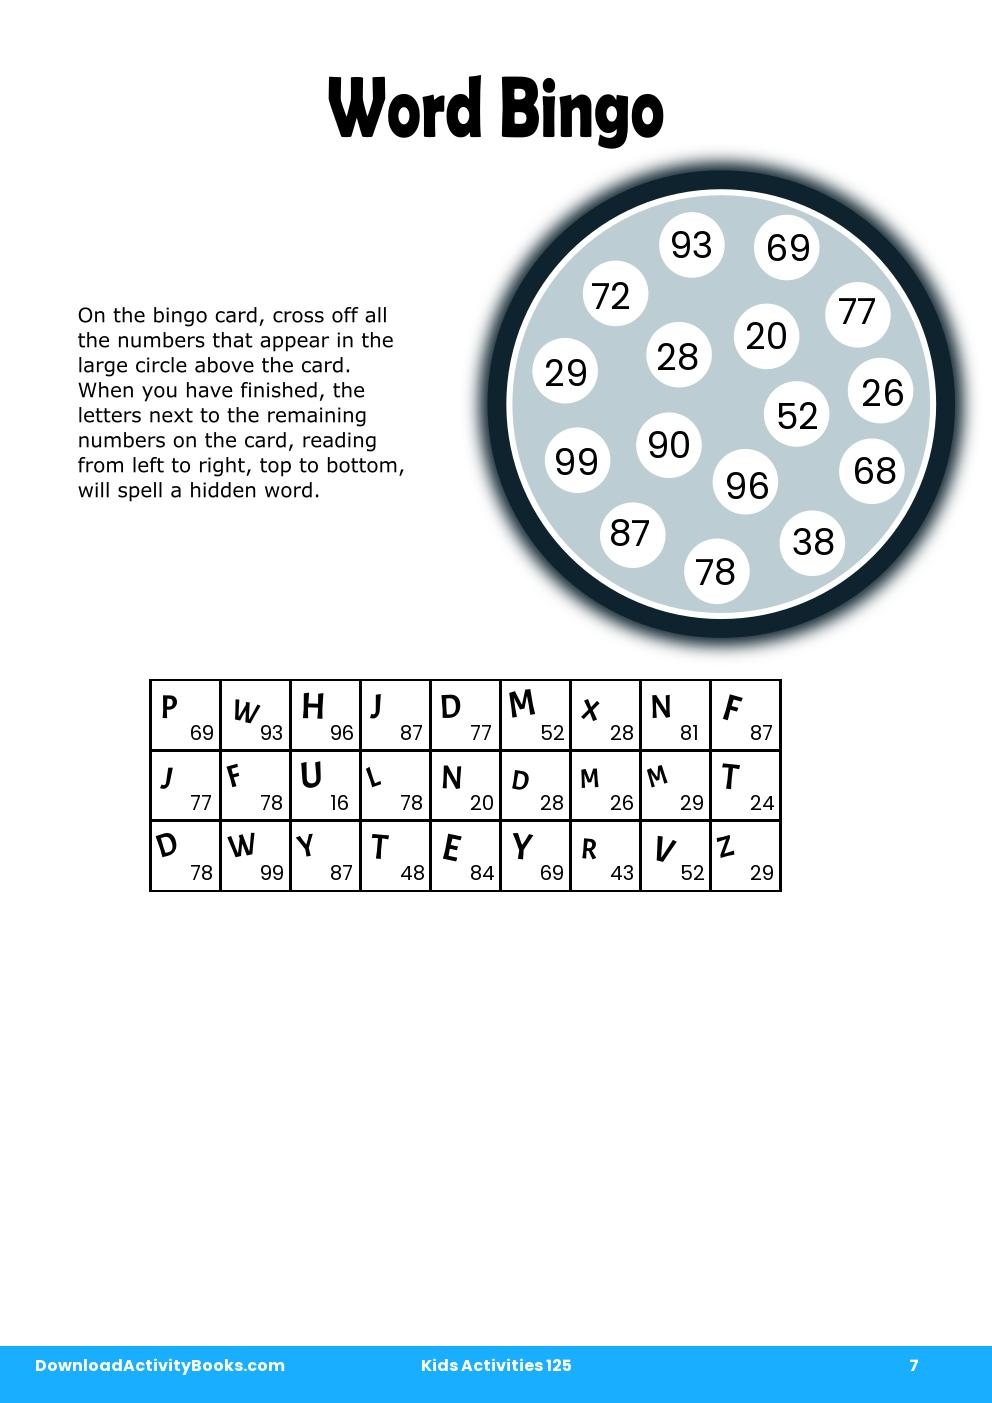 Word Bingo in Kids Activities 125